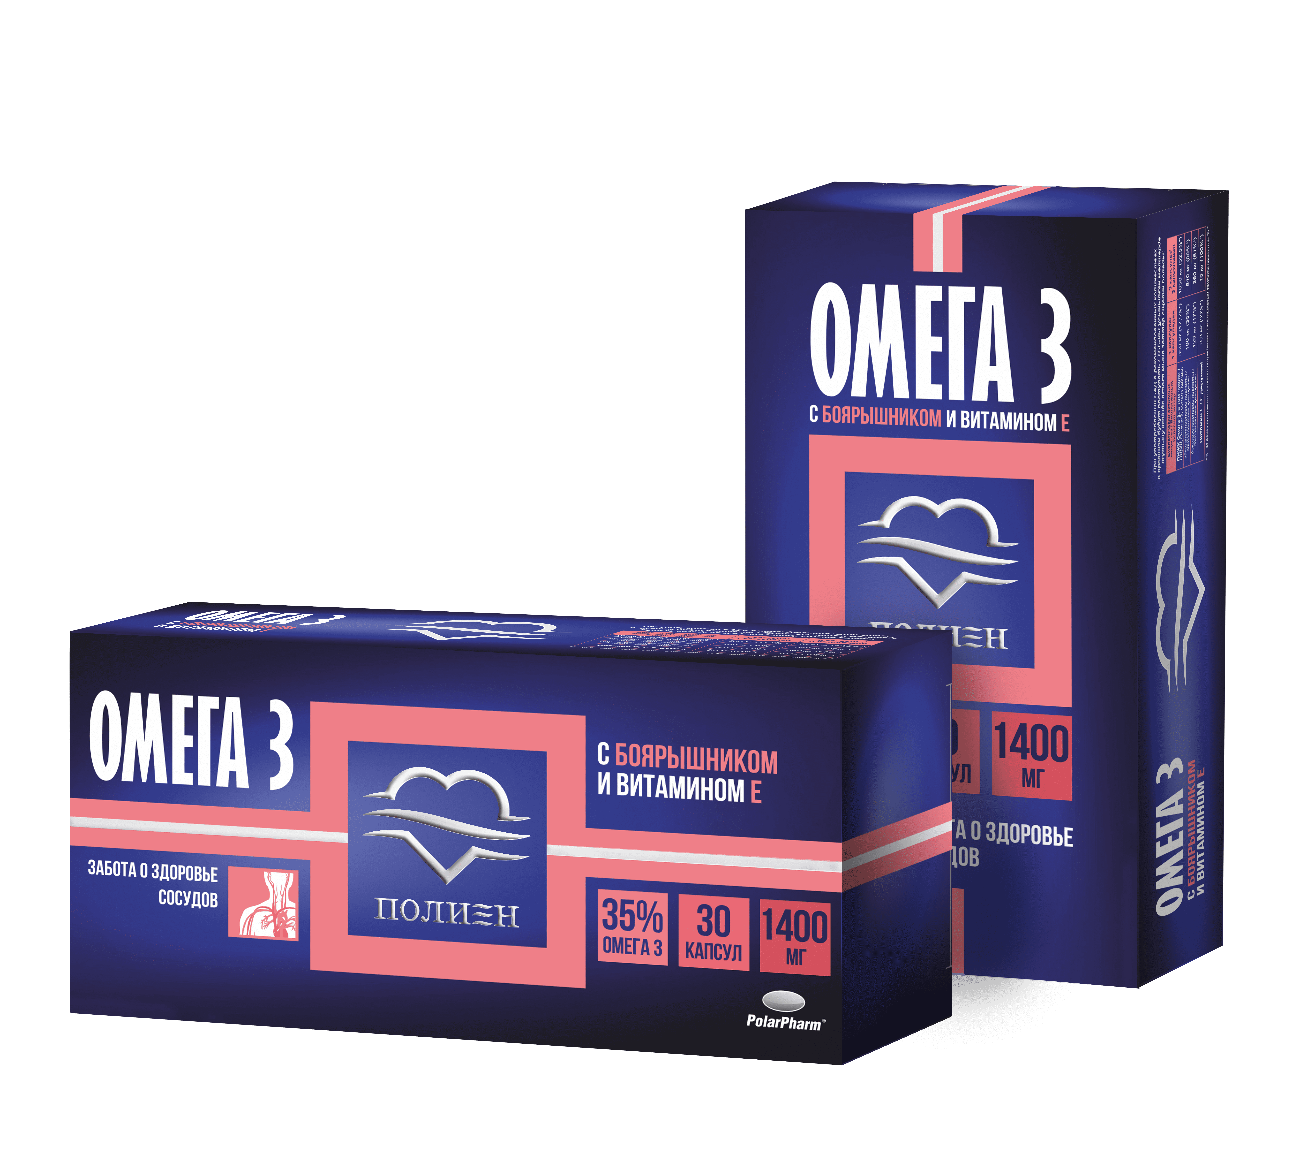 Купить Омега-3 35% с боярышником и витамином Е по доступной цене от ООО .